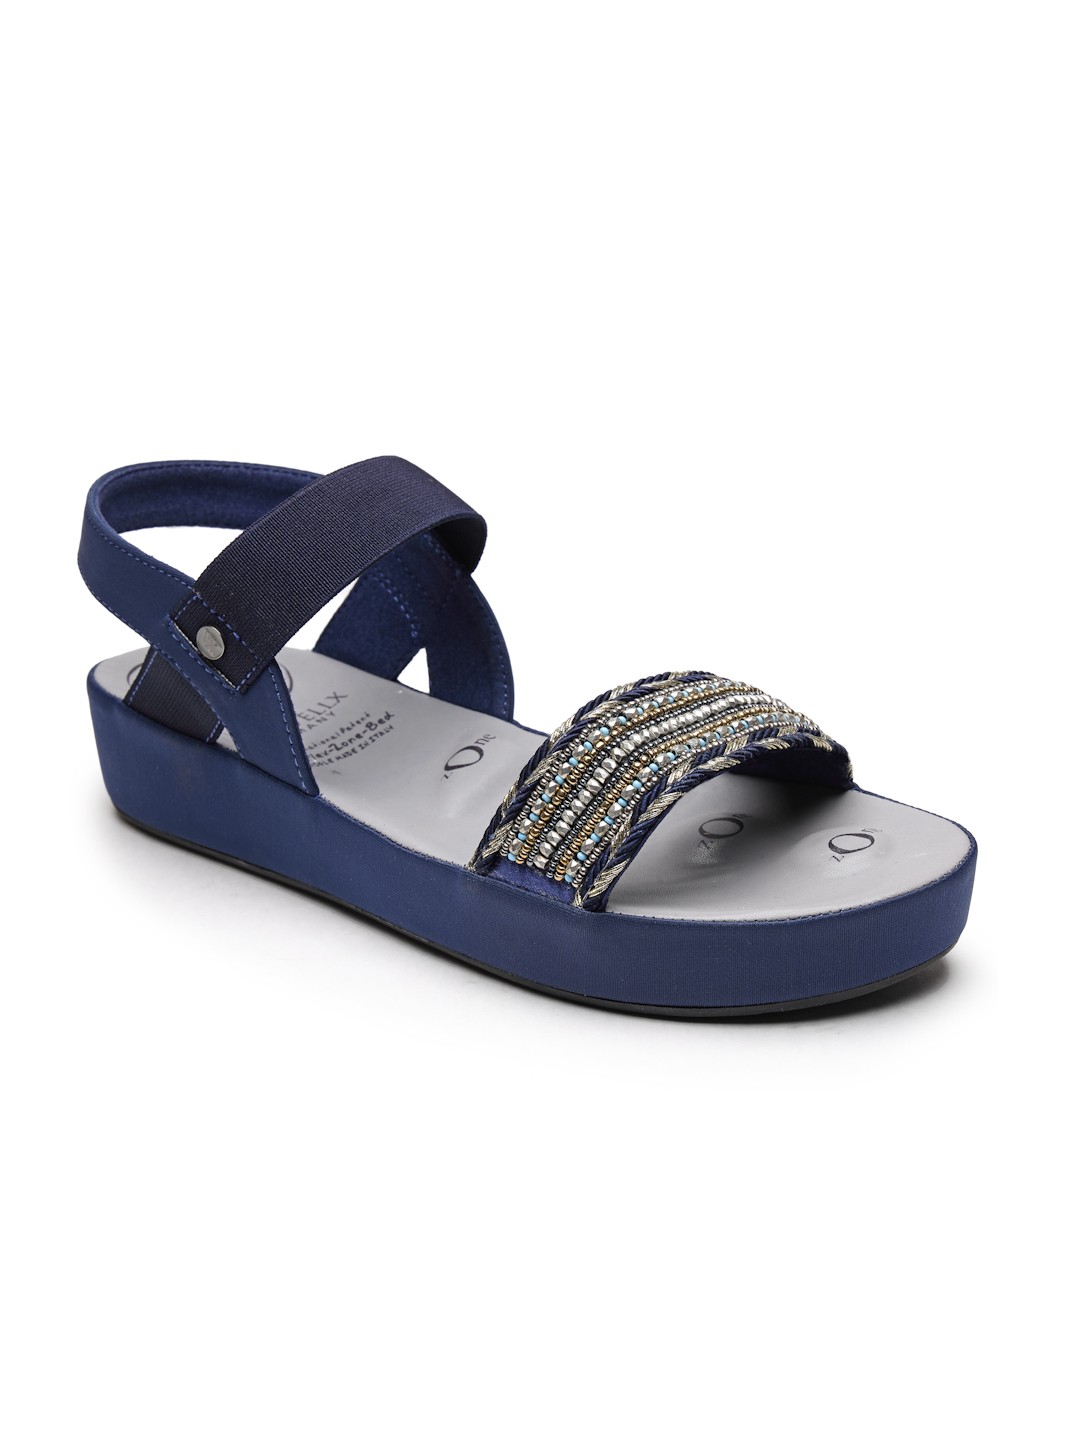 VON WELLX GERMANY comfort women's blue casual sandals LARA